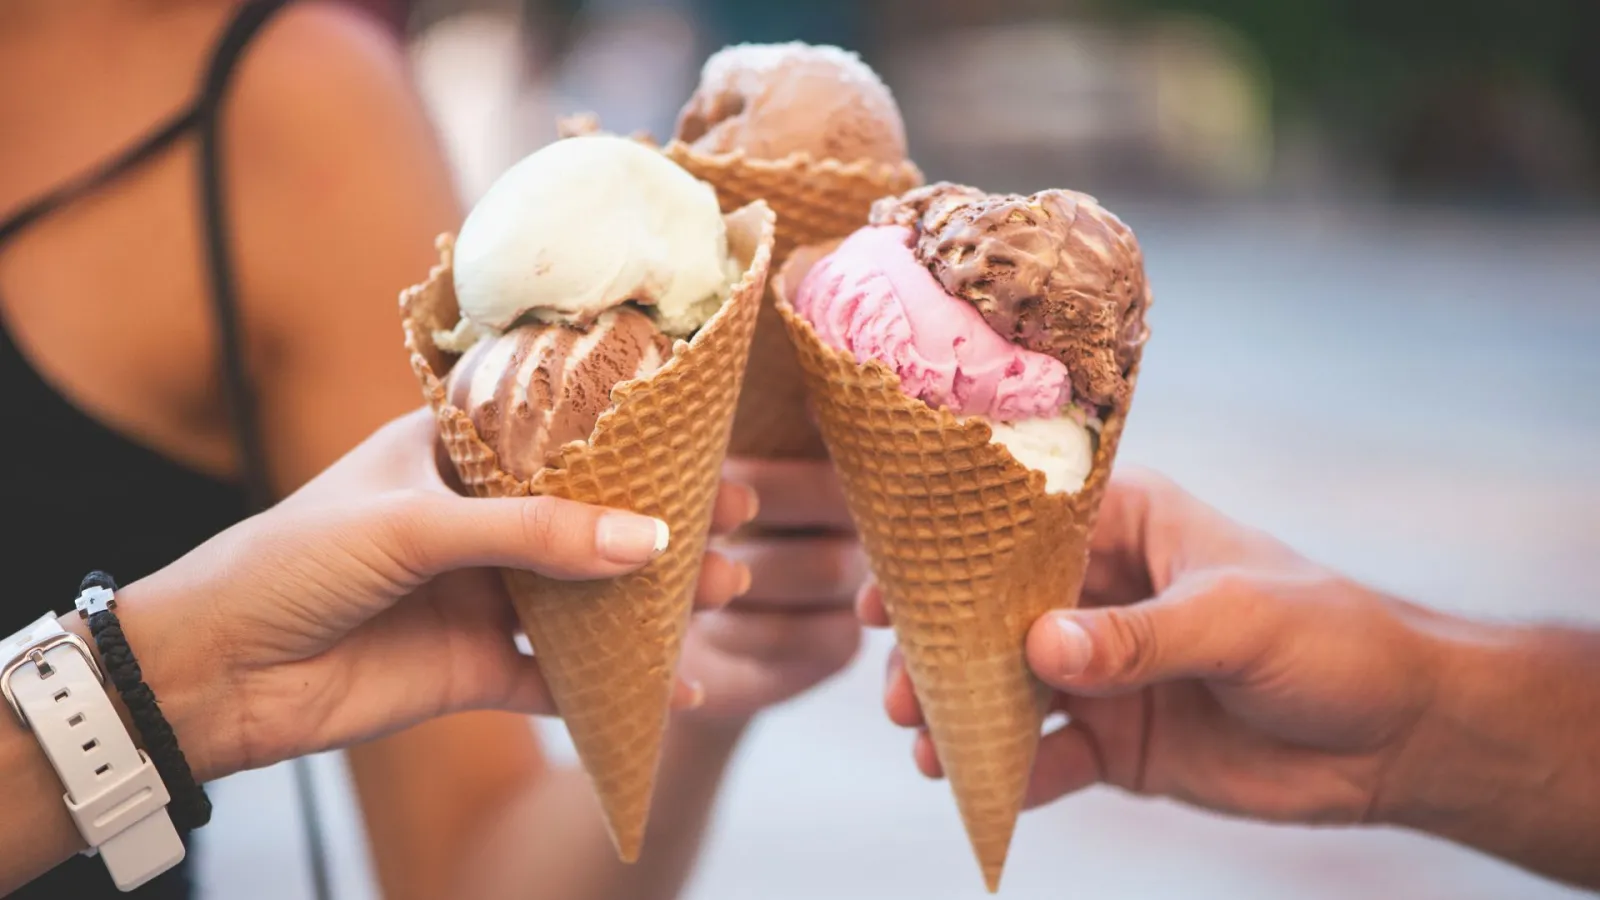 a person holding ice cream cones